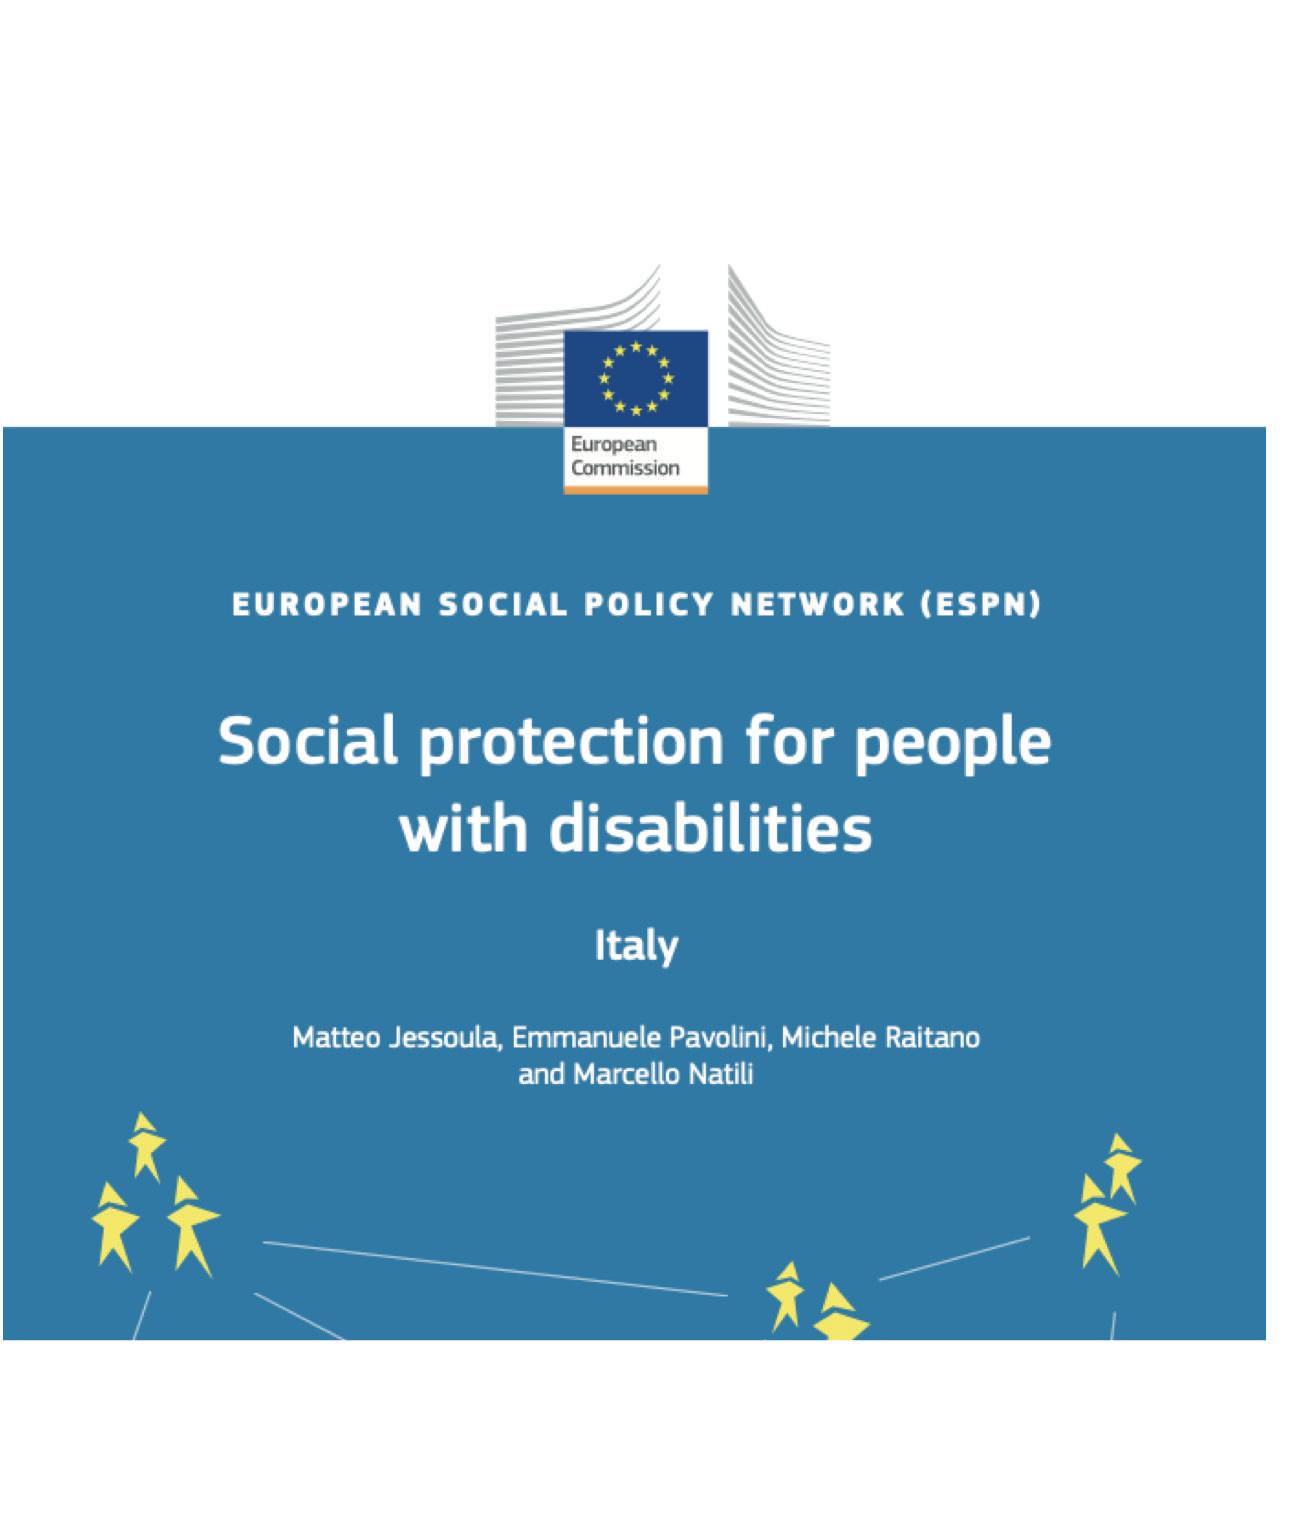 Il futuro dell'integrazione sociale nell'ultimo rapporto dalla Commissione europea